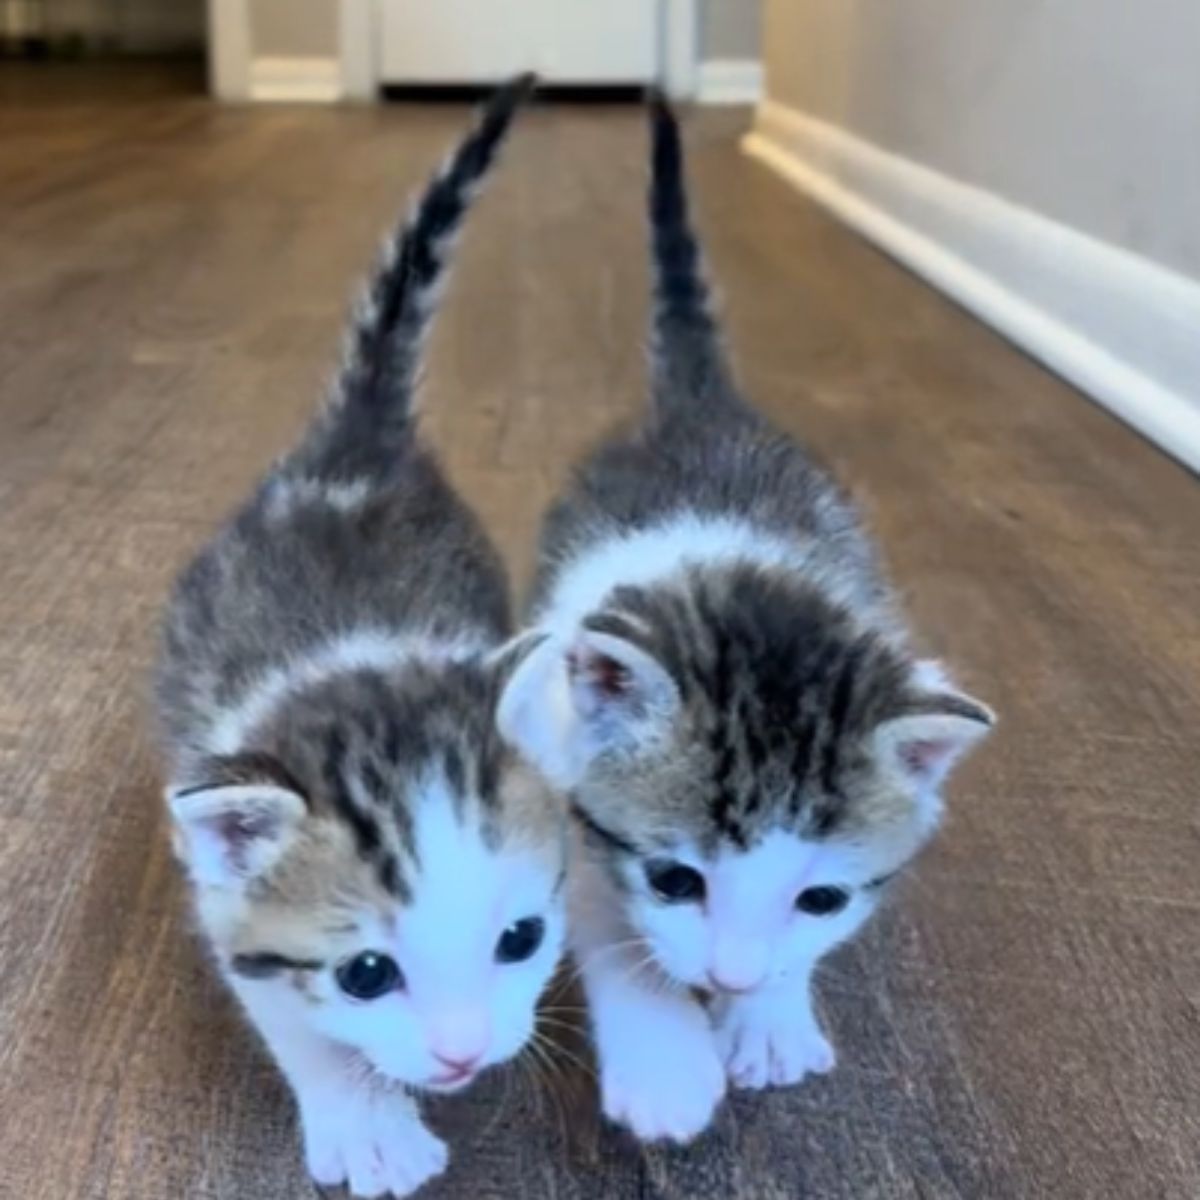 two little kittens